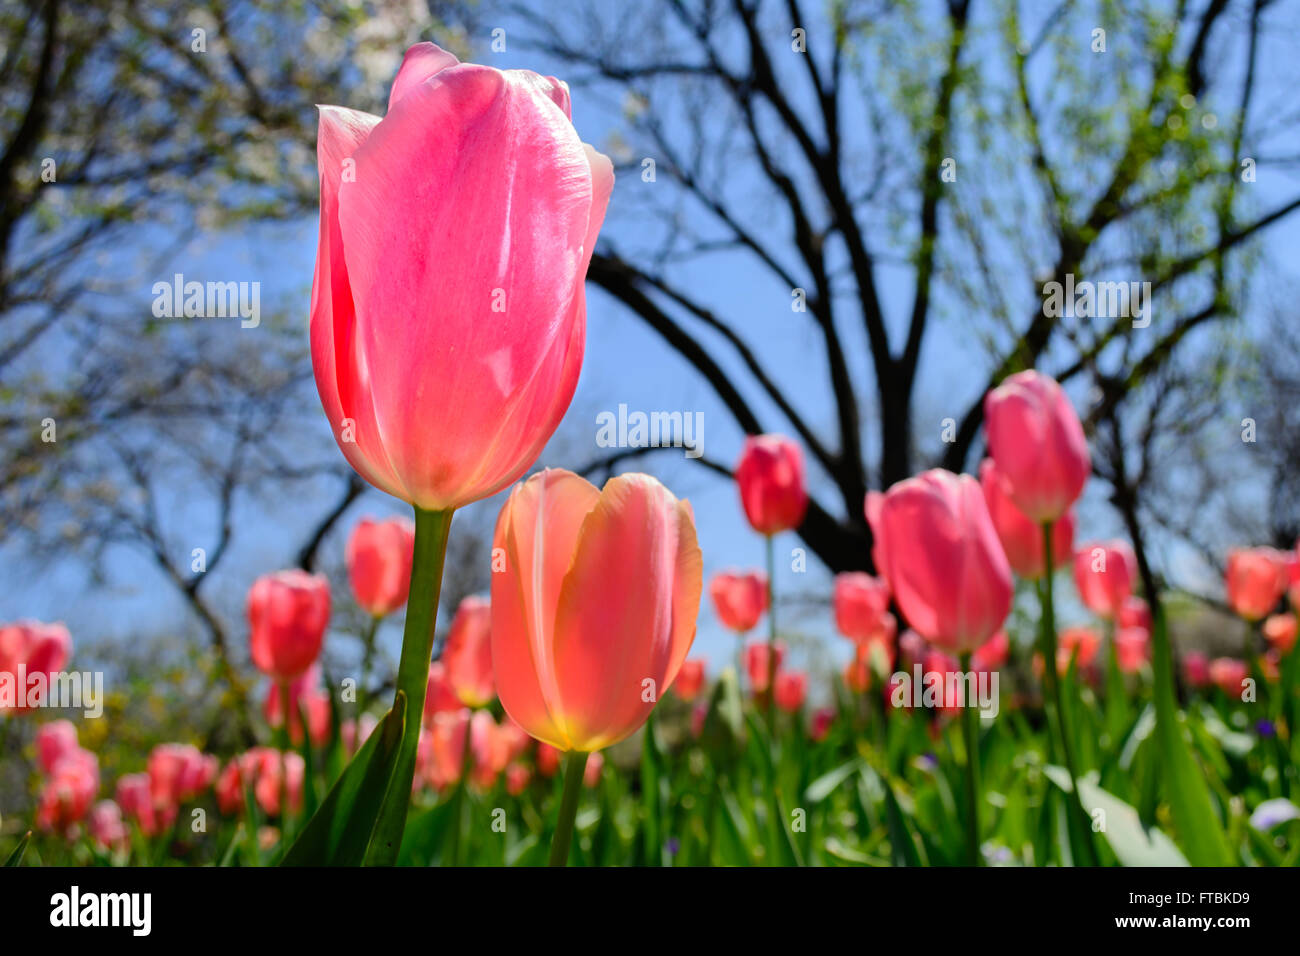 Einzigen rosa Tulpe selektiven Fokus Vordergrund mit Blüten Kirschbäume und Tulpen im Hintergrund Stand-up, abheben, stehen hoch Stockfoto